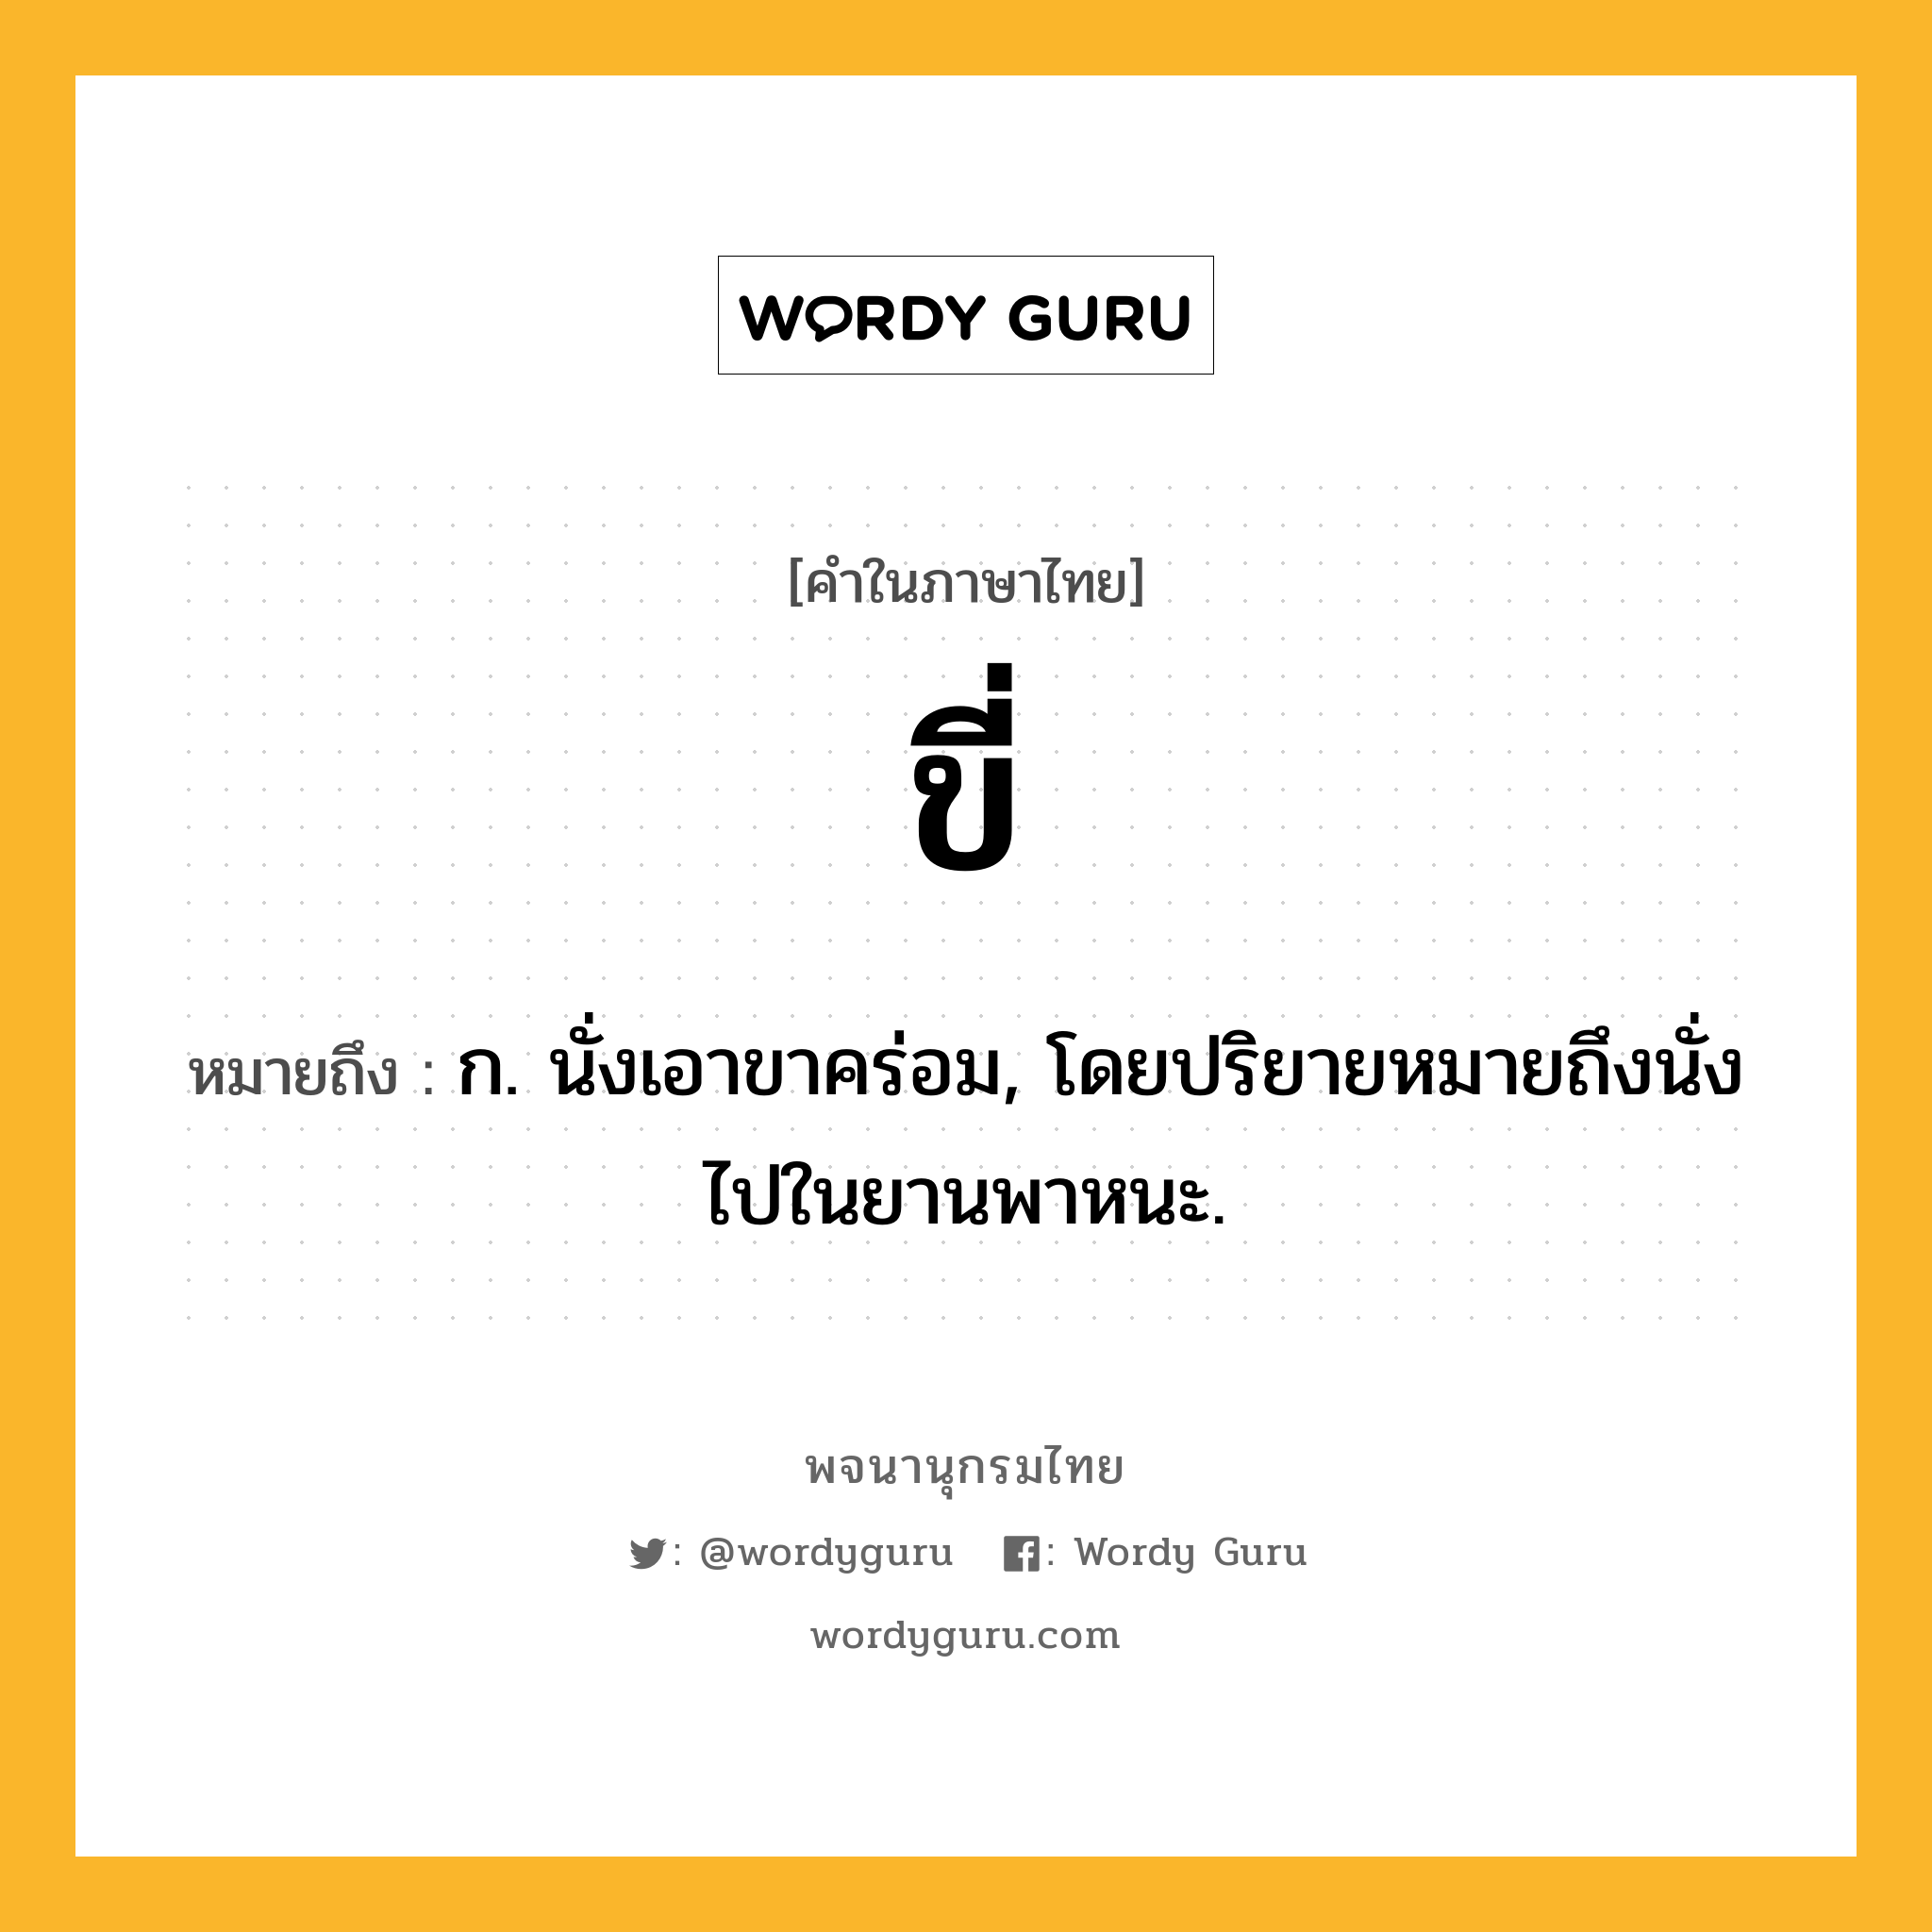 ขี่ หมายถึงอะไร?, คำในภาษาไทย ขี่ หมายถึง ก. นั่งเอาขาคร่อม, โดยปริยายหมายถึงนั่งไปในยานพาหนะ.